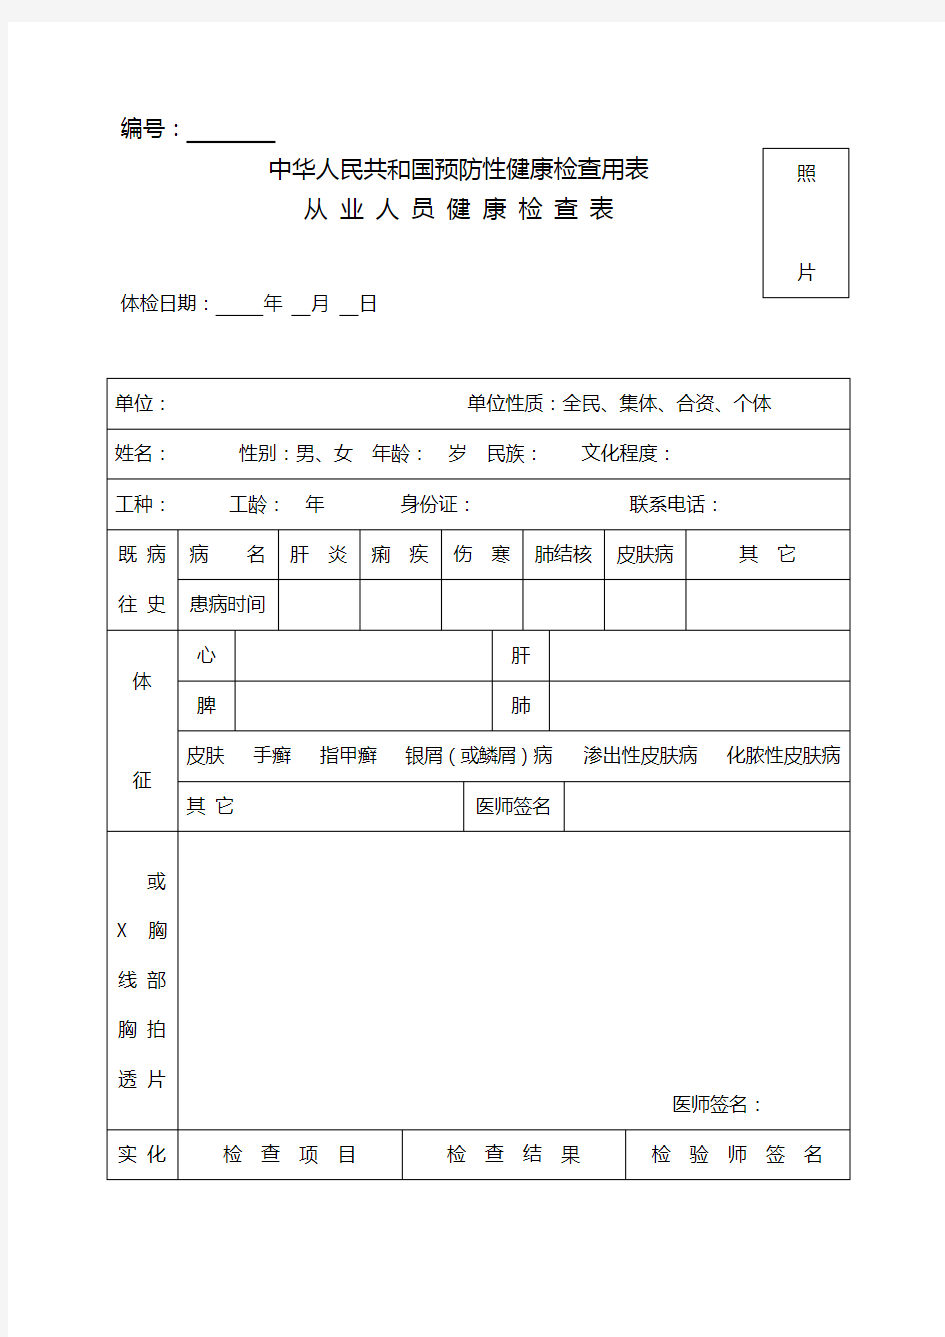 中华人民共和国预防性健康检查用表 完美版